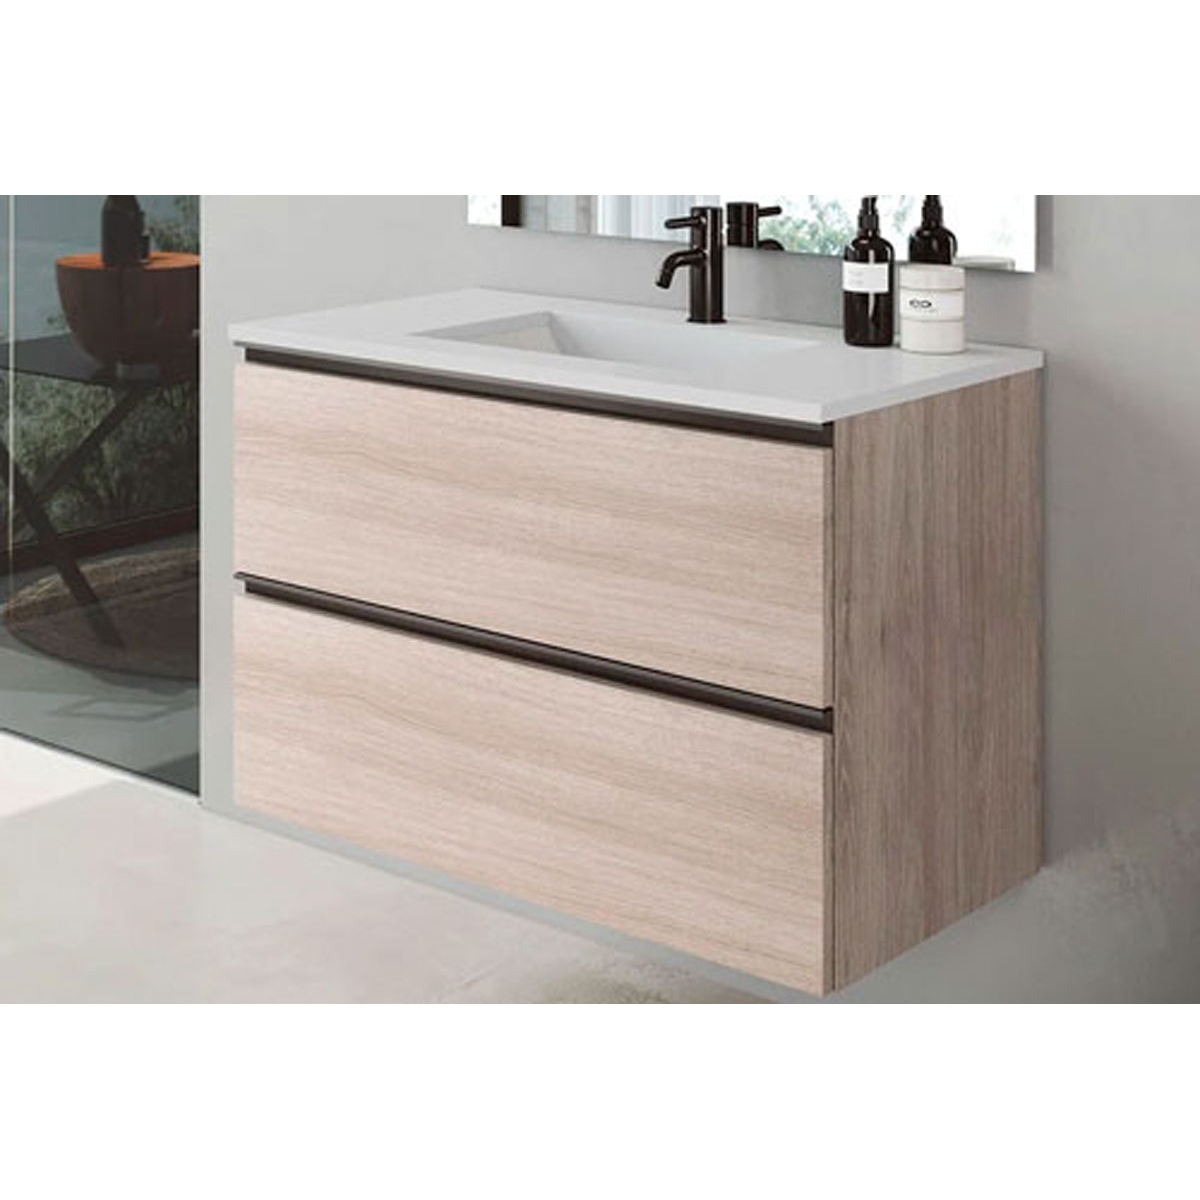 Mueble de baño de suelo de 100 cm con 2 cajones con lavabo integrado acabado crudo Modelo Granadaw